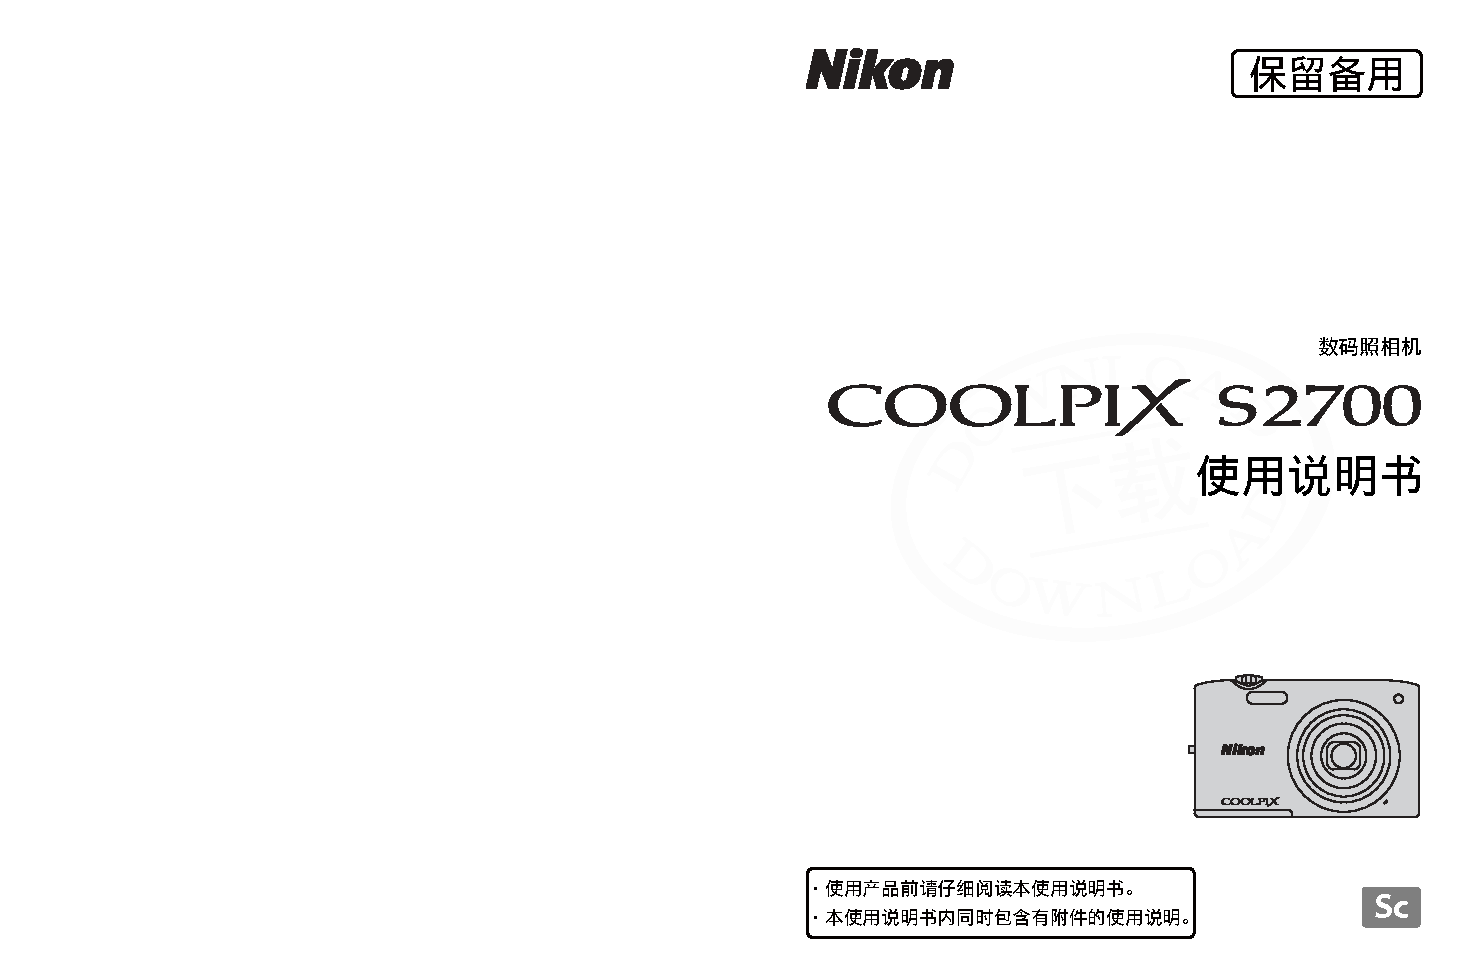 尼康 Nikon COOLPIX S2700 国际版 使用说明书 封面